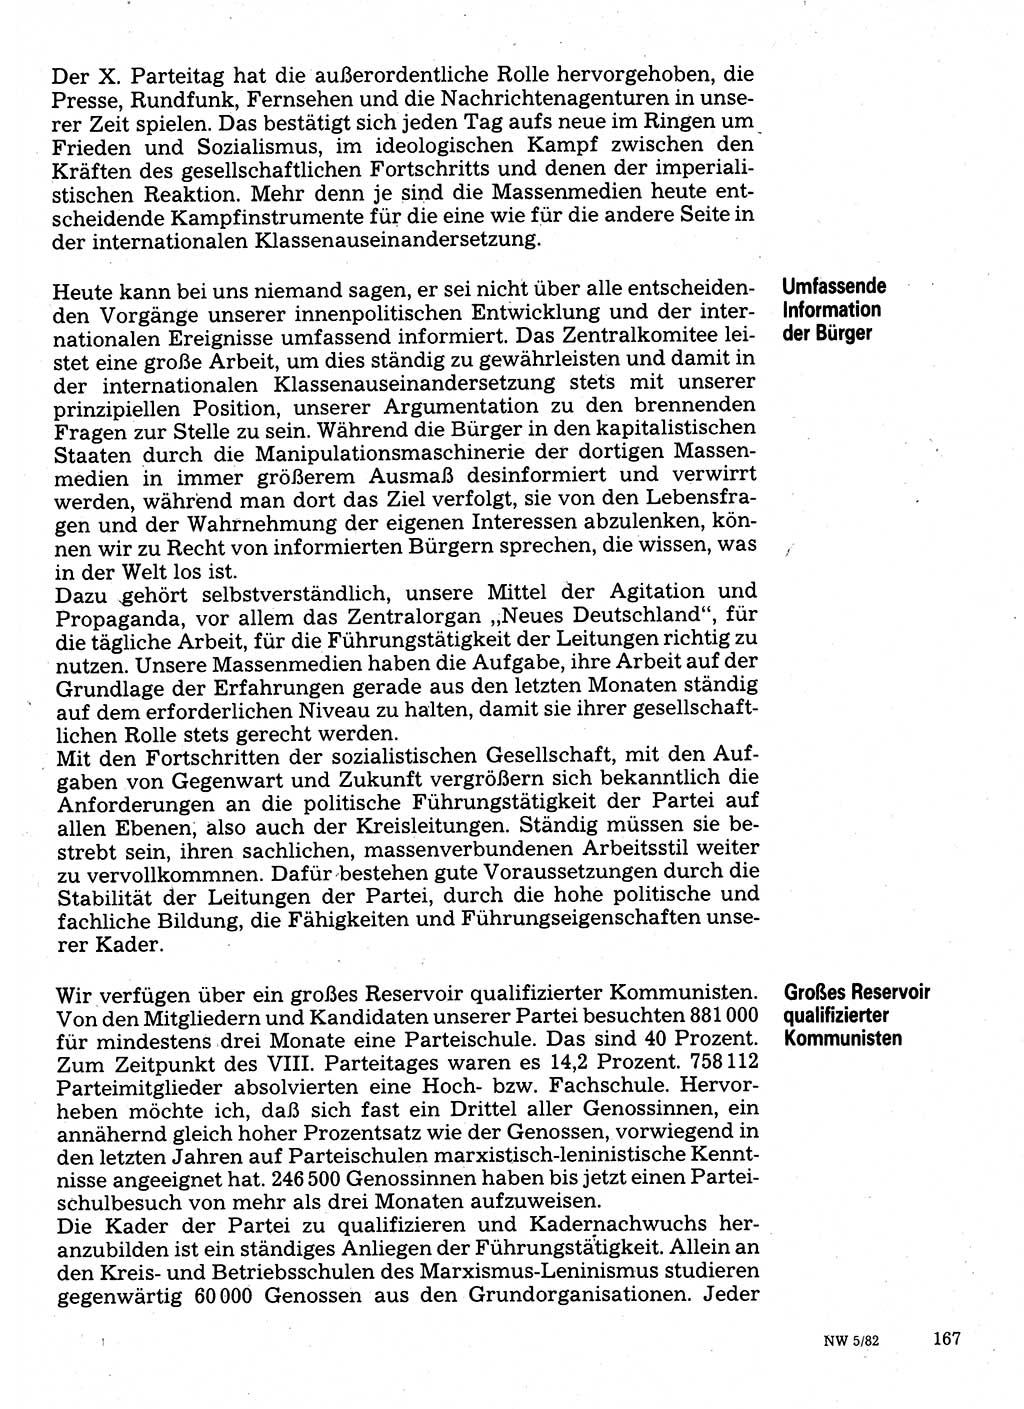 Neuer Weg (NW), Organ des Zentralkomitees (ZK) der SED (Sozialistische Einheitspartei Deutschlands) für Fragen des Parteilebens, 37. Jahrgang [Deutsche Demokratische Republik (DDR)] 1982, Seite 167 (NW ZK SED DDR 1982, S. 167)